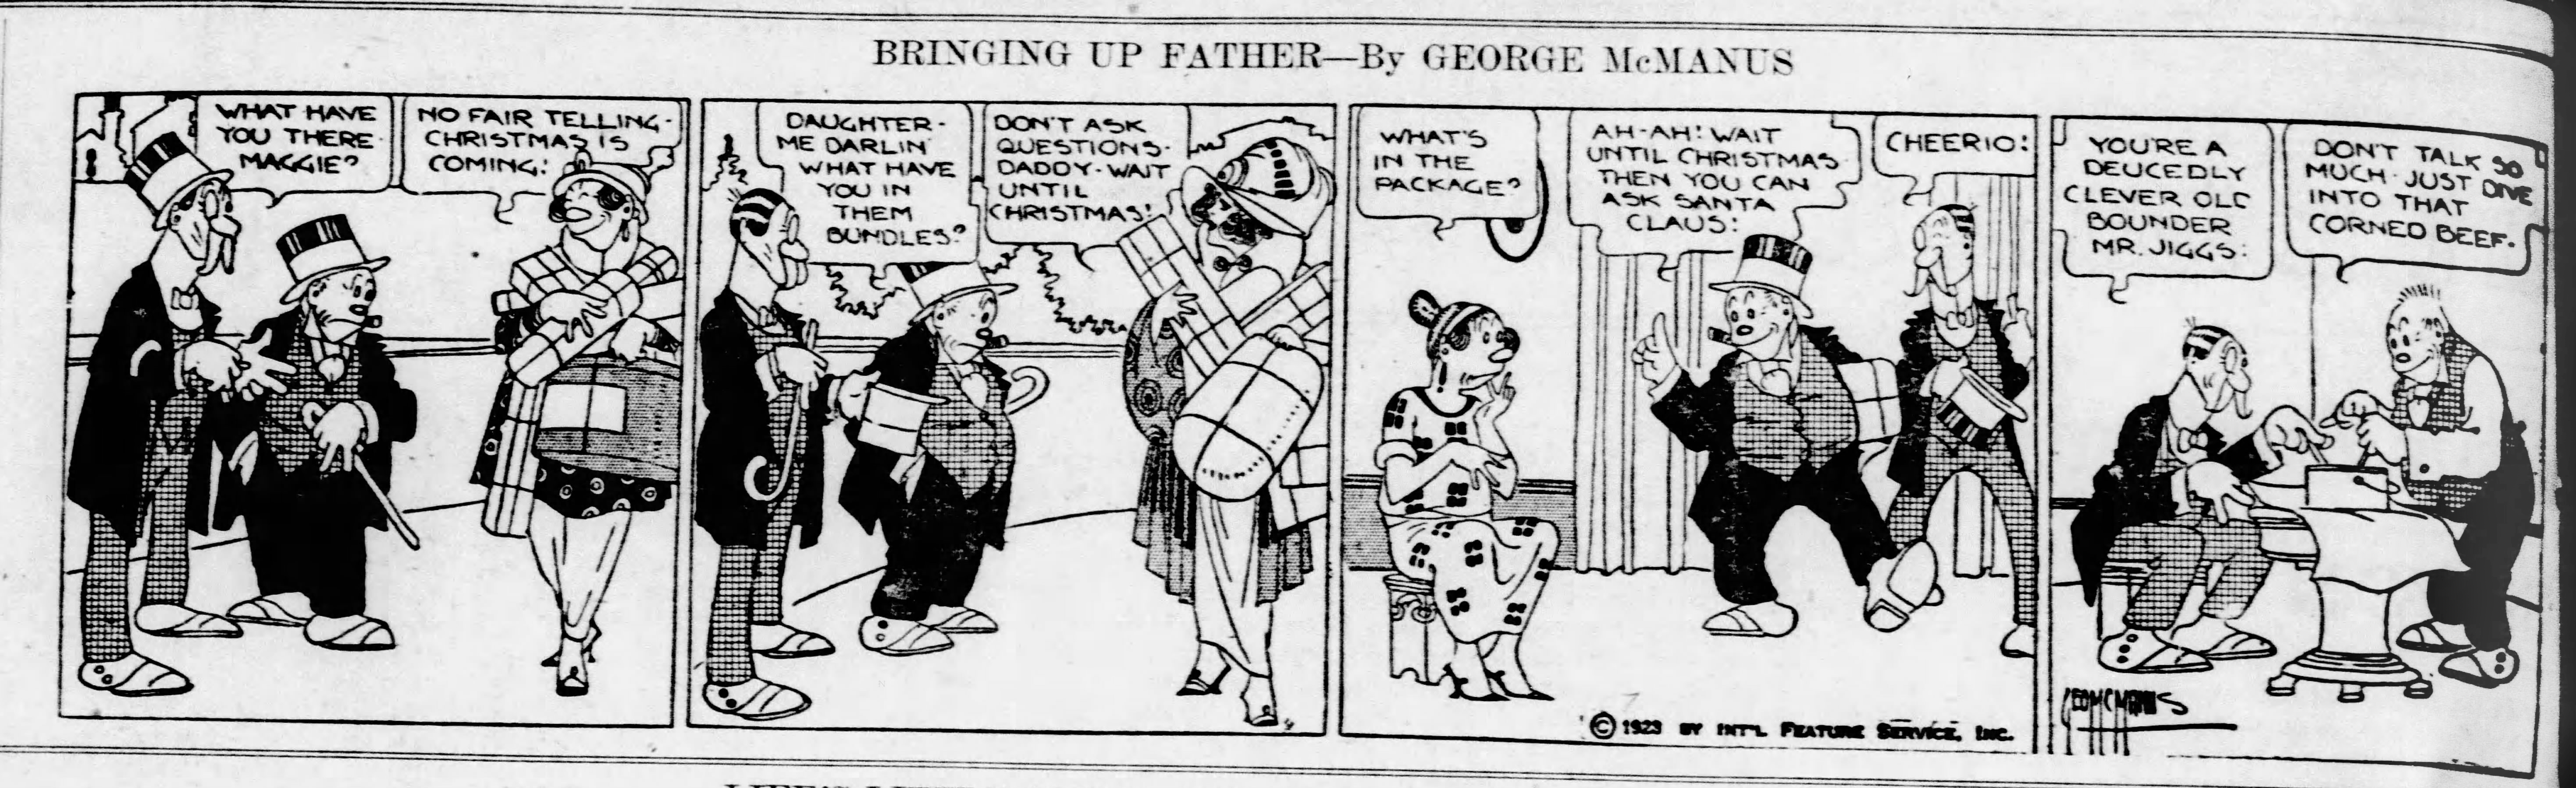 Bringing Up Father, December 17, 1923